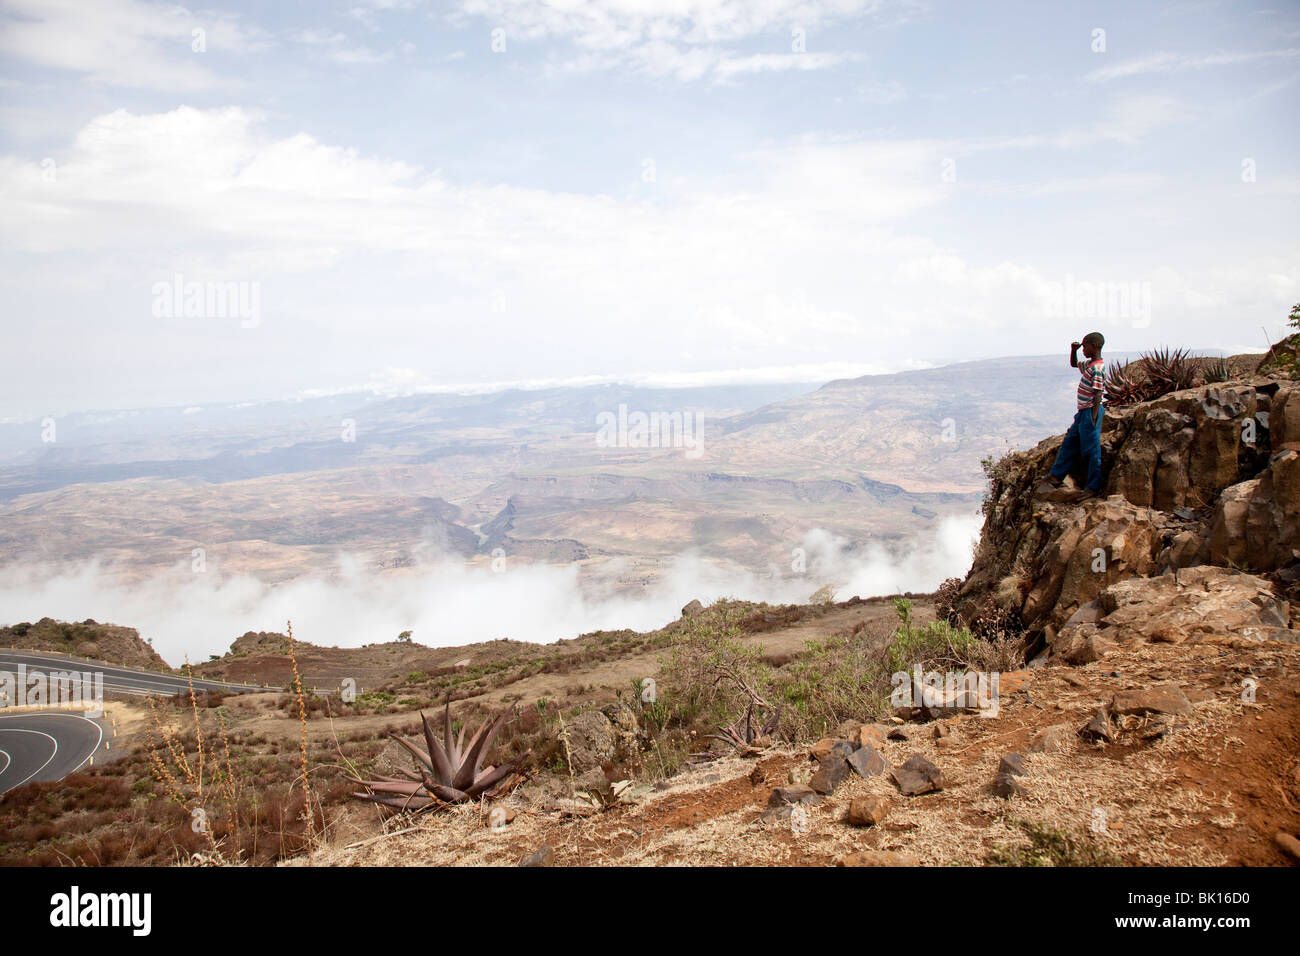 Blue Nile valley Ethiopia Stock Photo